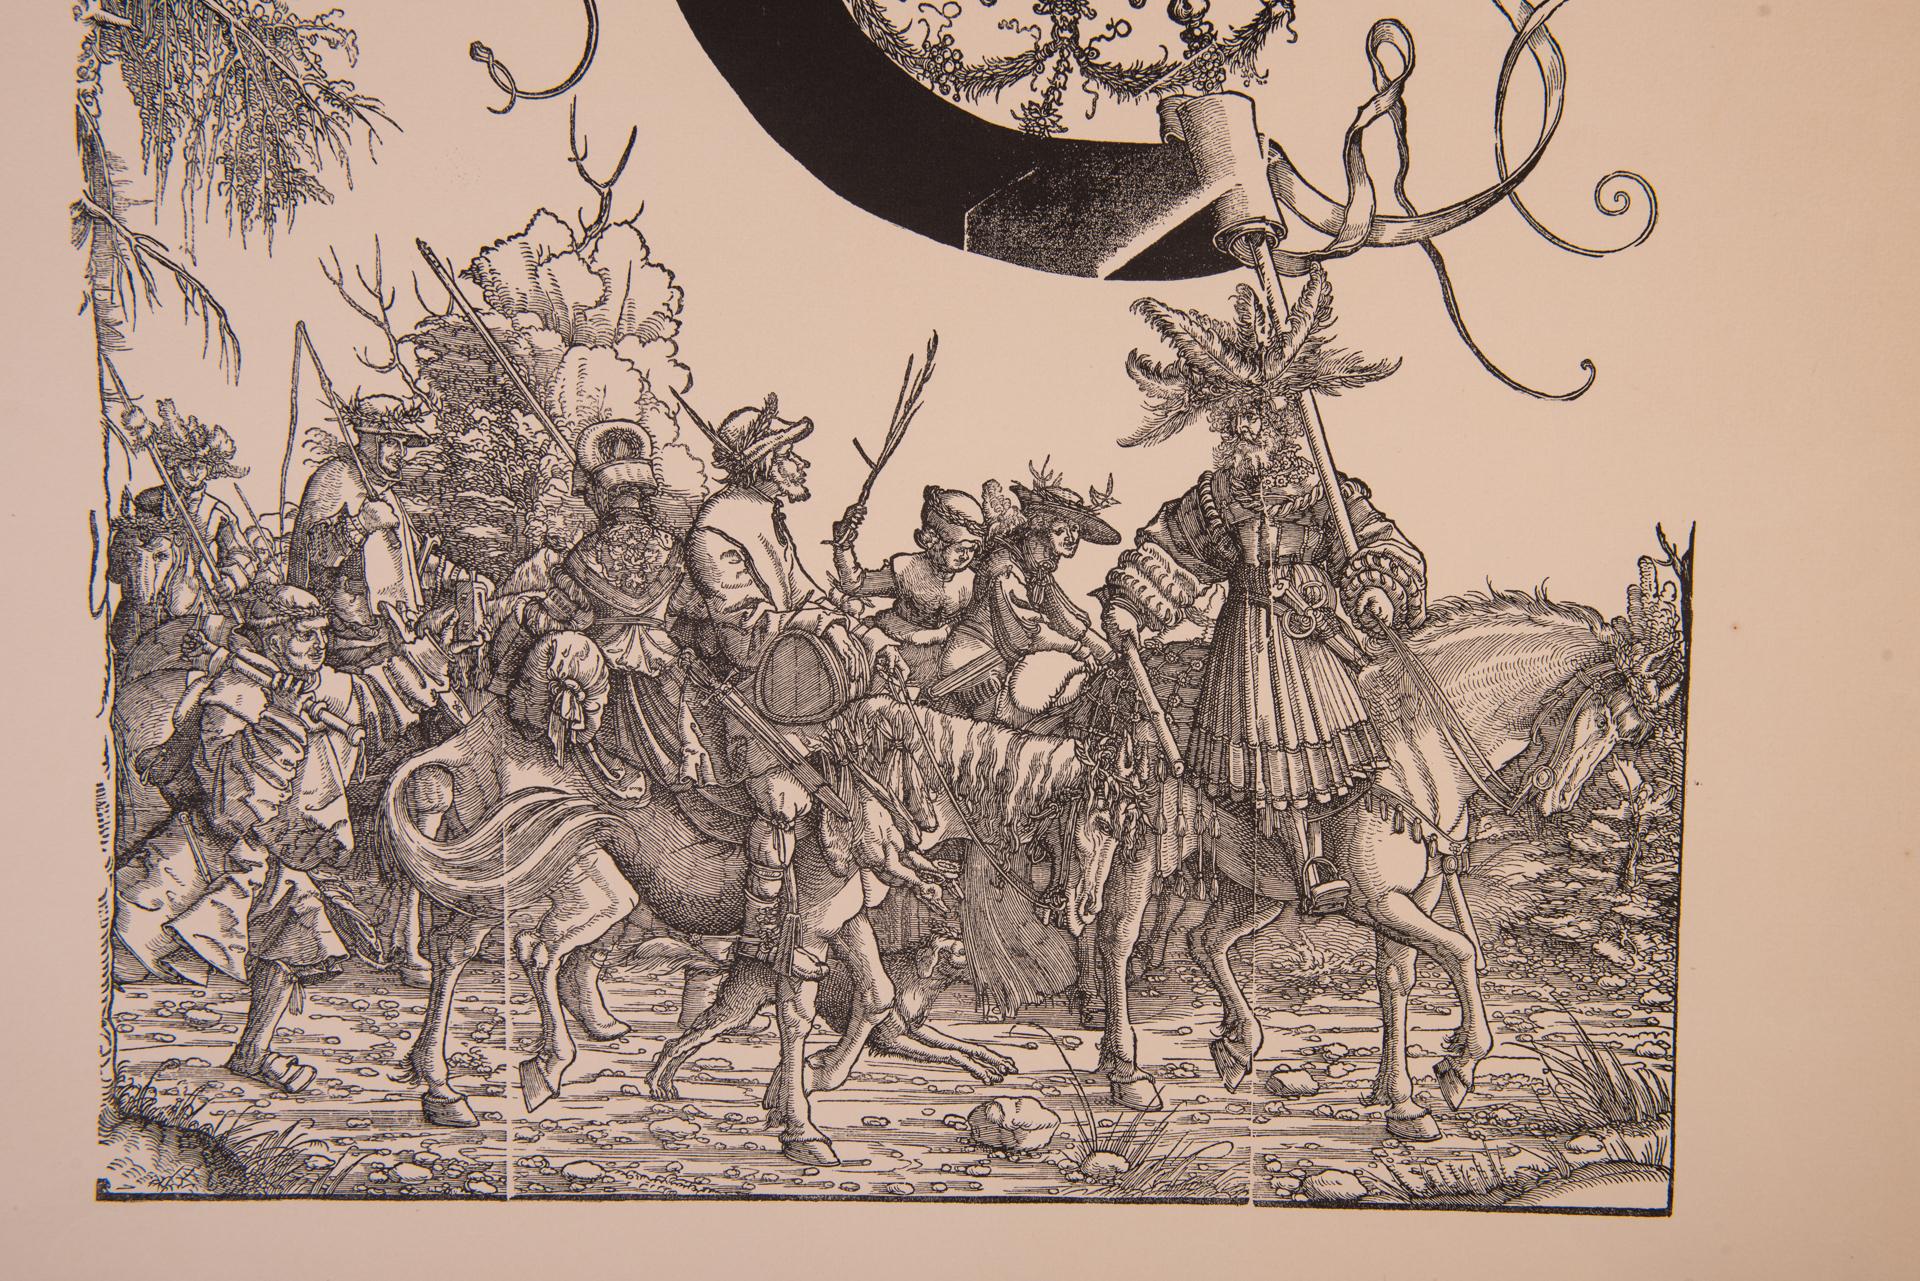 ST/728 /3 -  Kupferstich von Maximilian I° - Prozession (nicht näher bezeichnet) - nach Originalstichen des 16. und 17. Jahrhunderts von Albrecht Altdorfer - Deutschland  (Landshut 1480- Regensburg 1538).
Bei einer internationalen Auktion wurden